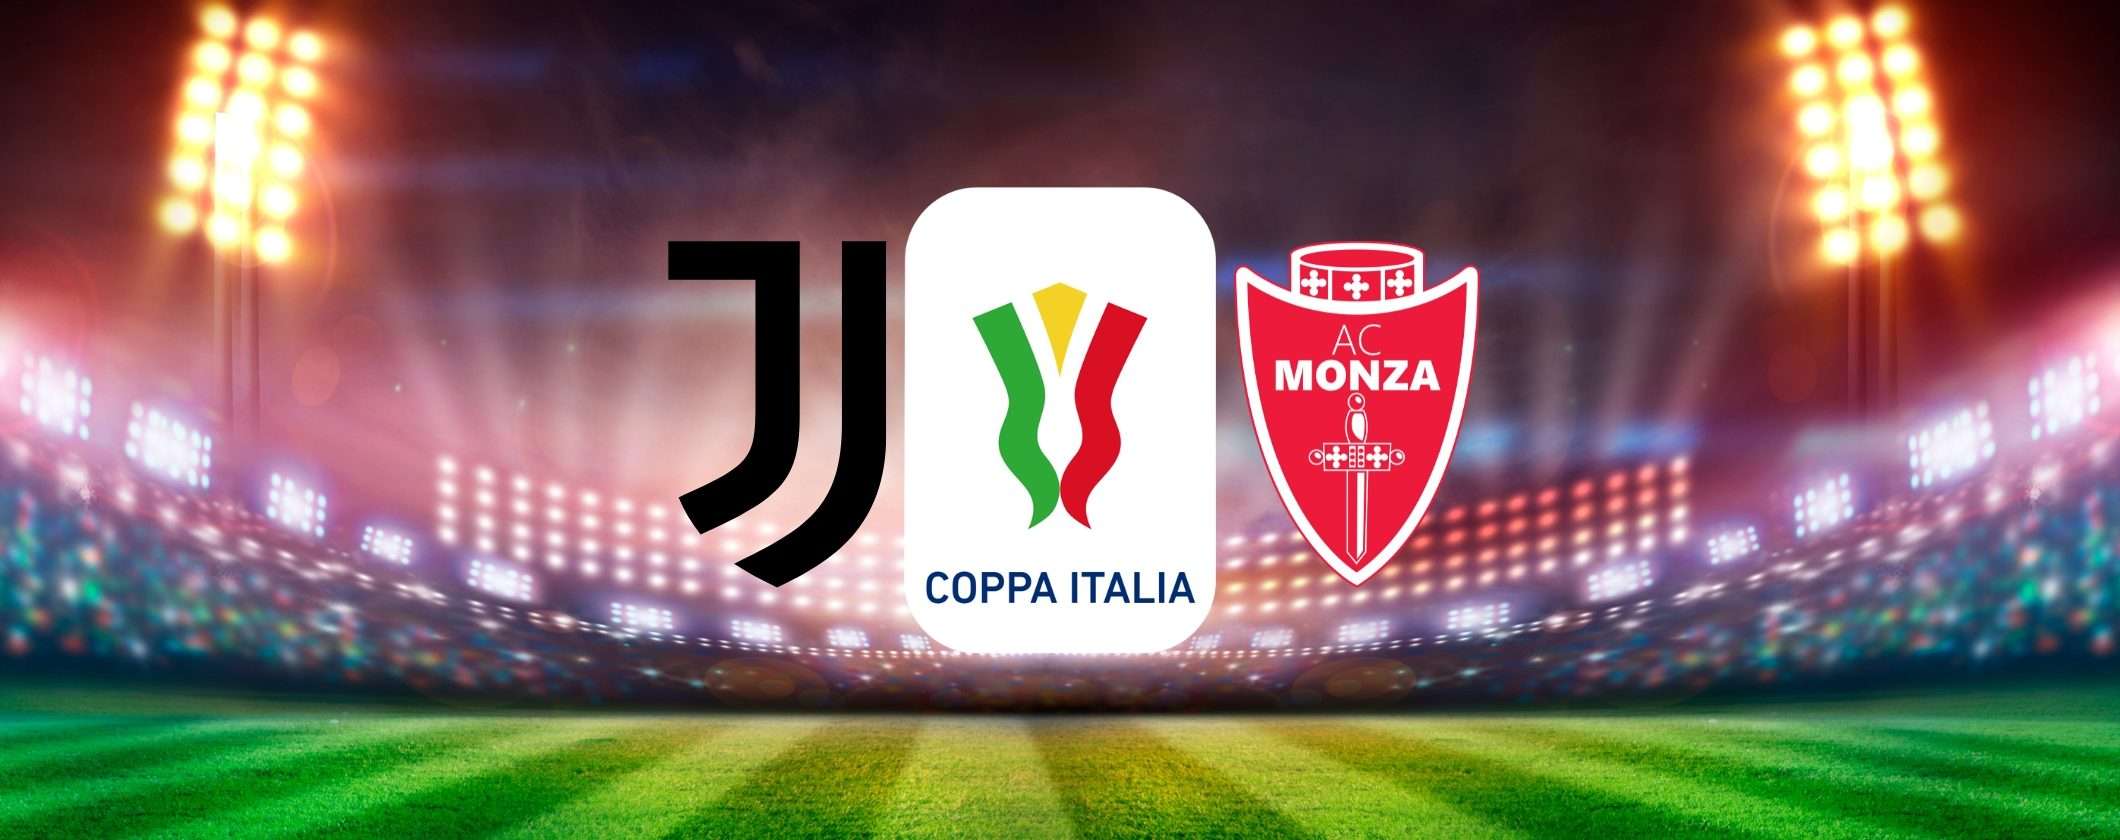 Come vedere Juventus-Monza in streaming senza limitazioni